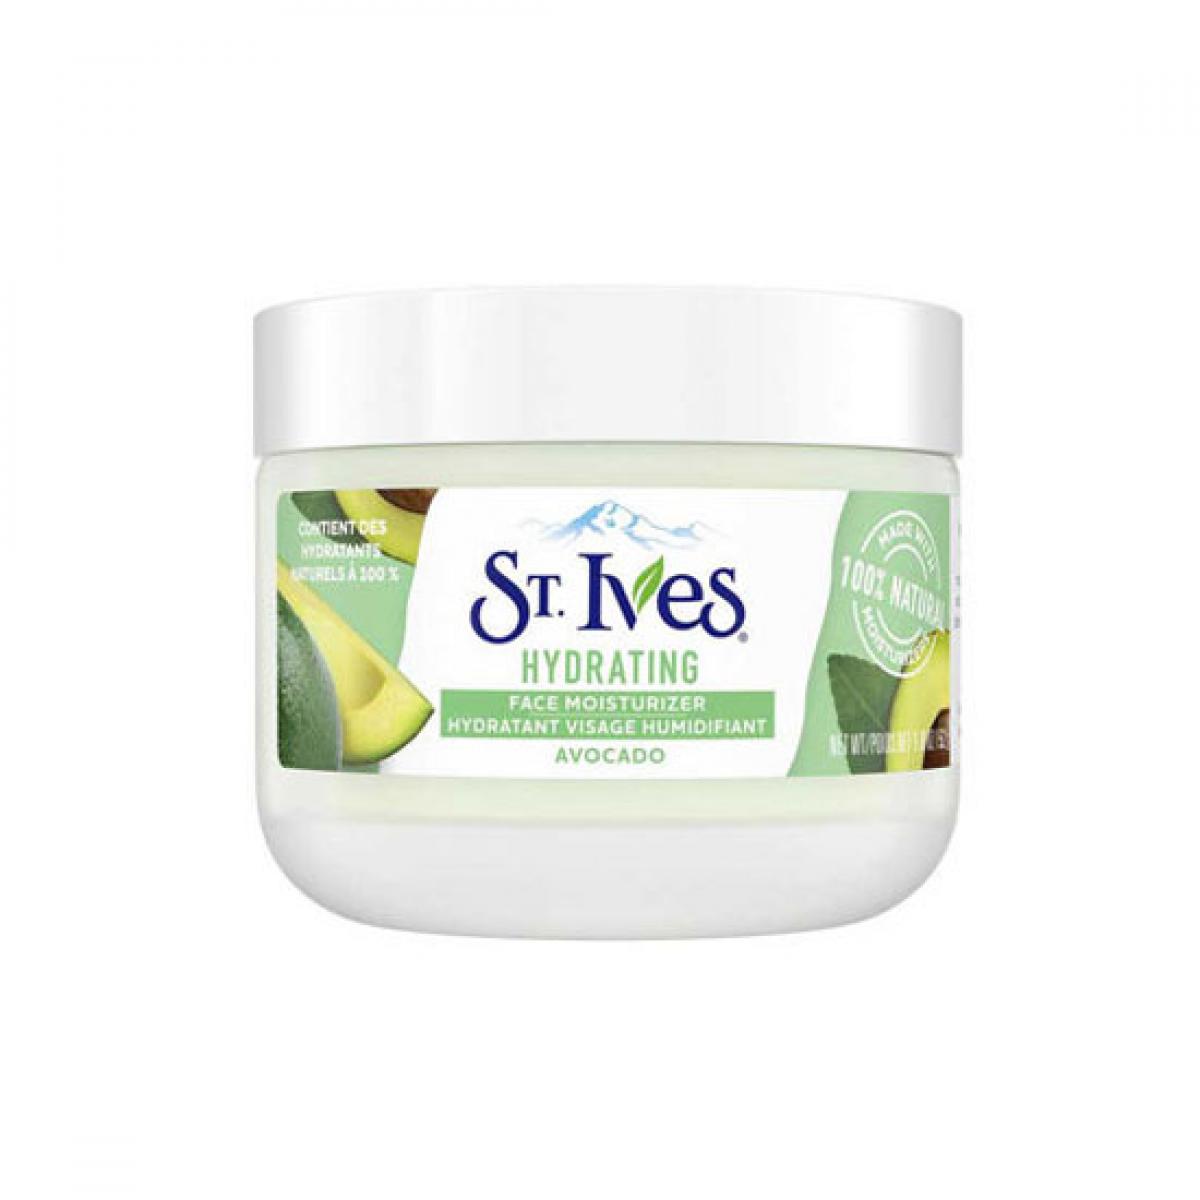 کرم مرطوب کننده صورت آووکادو پوست خشک و مختلط - ST. IVES Hydrating Face Moisturizer Avocado Cream